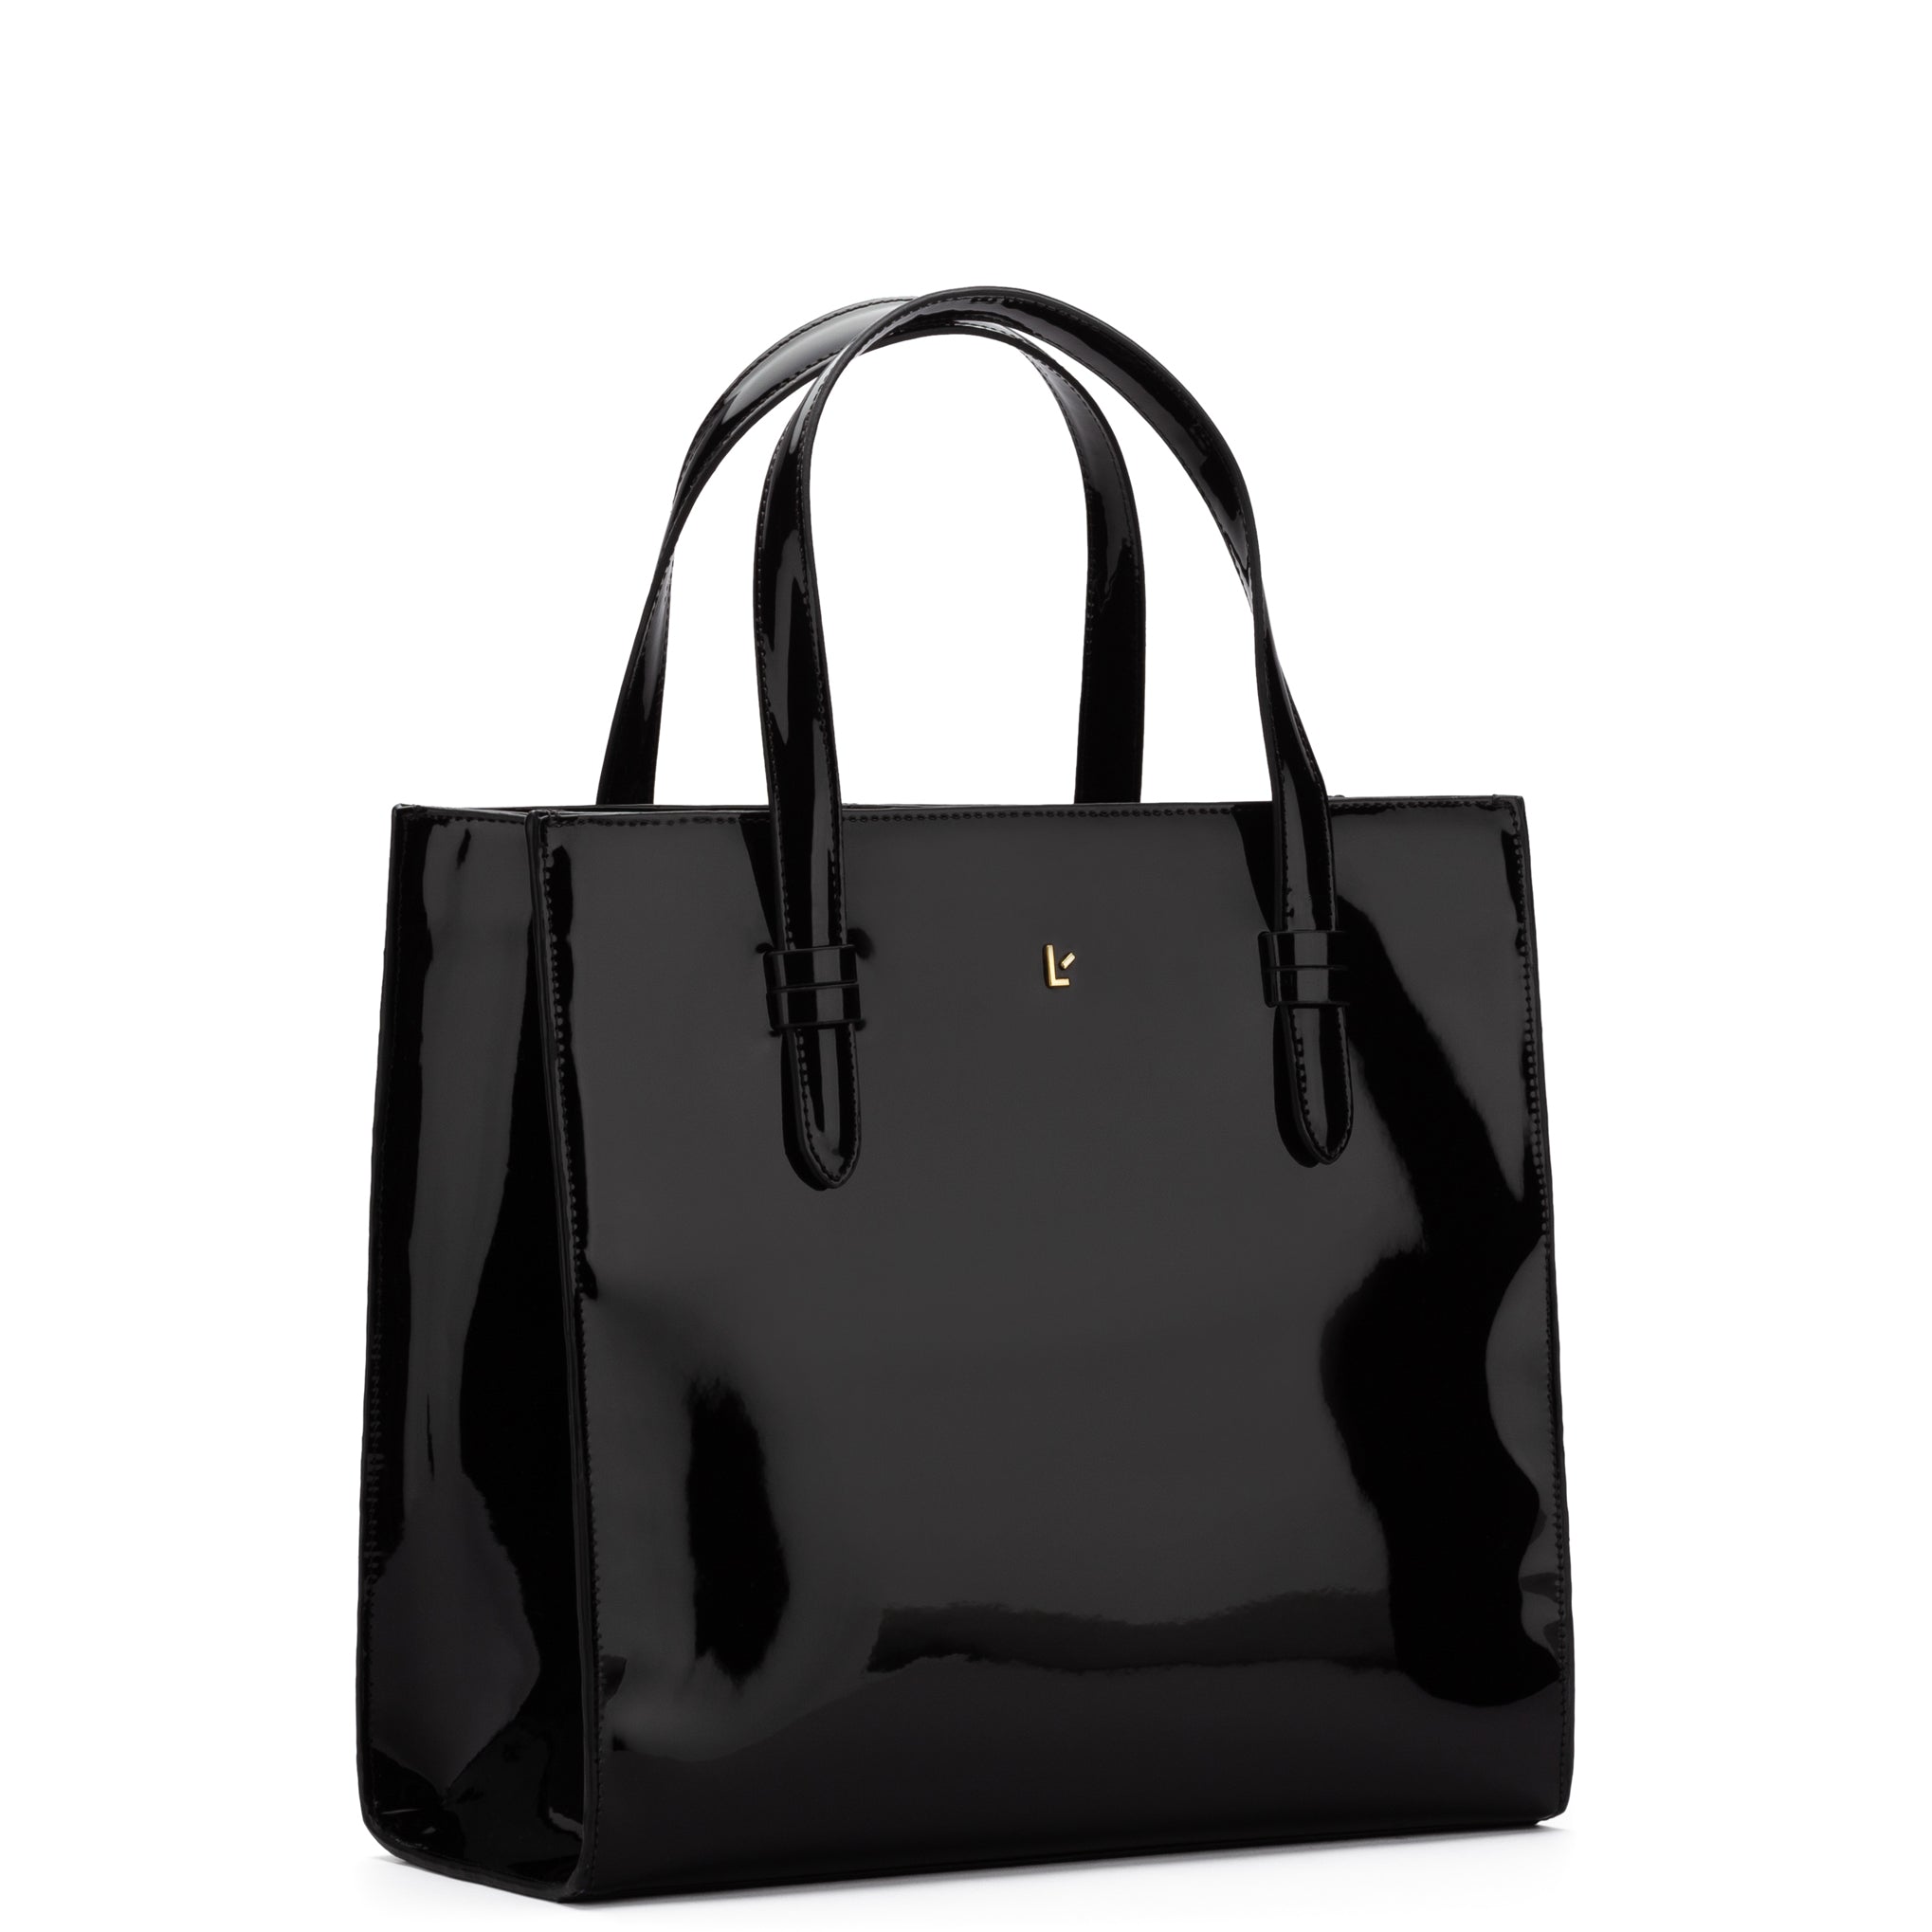 Davinci Italian imported shoulder bag color black #001